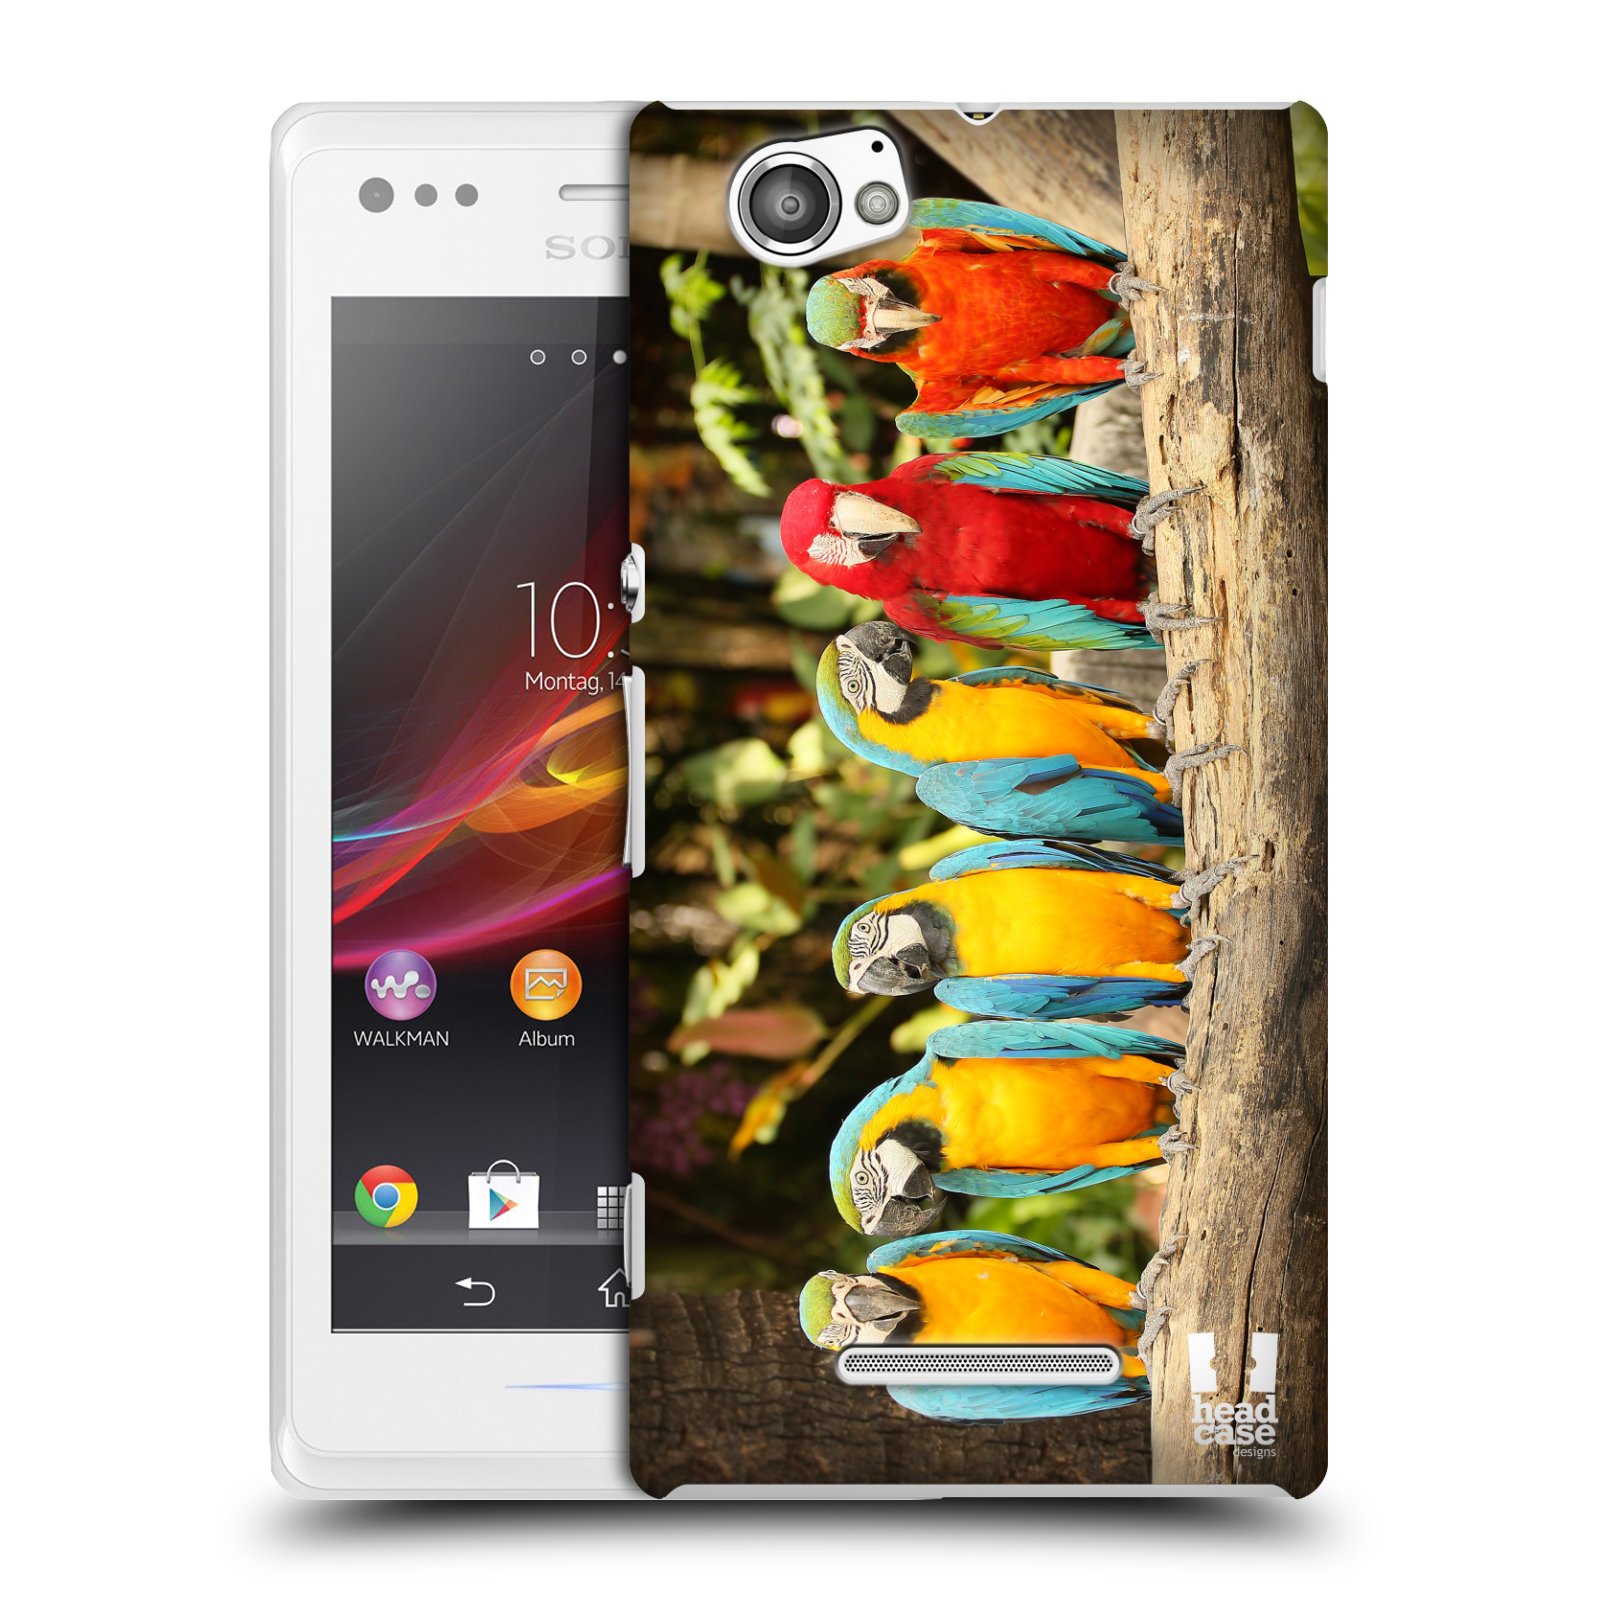 HEAD CASE plastový obal na mobil Sony Xperia M vzor slavná zvířata foto papoušci